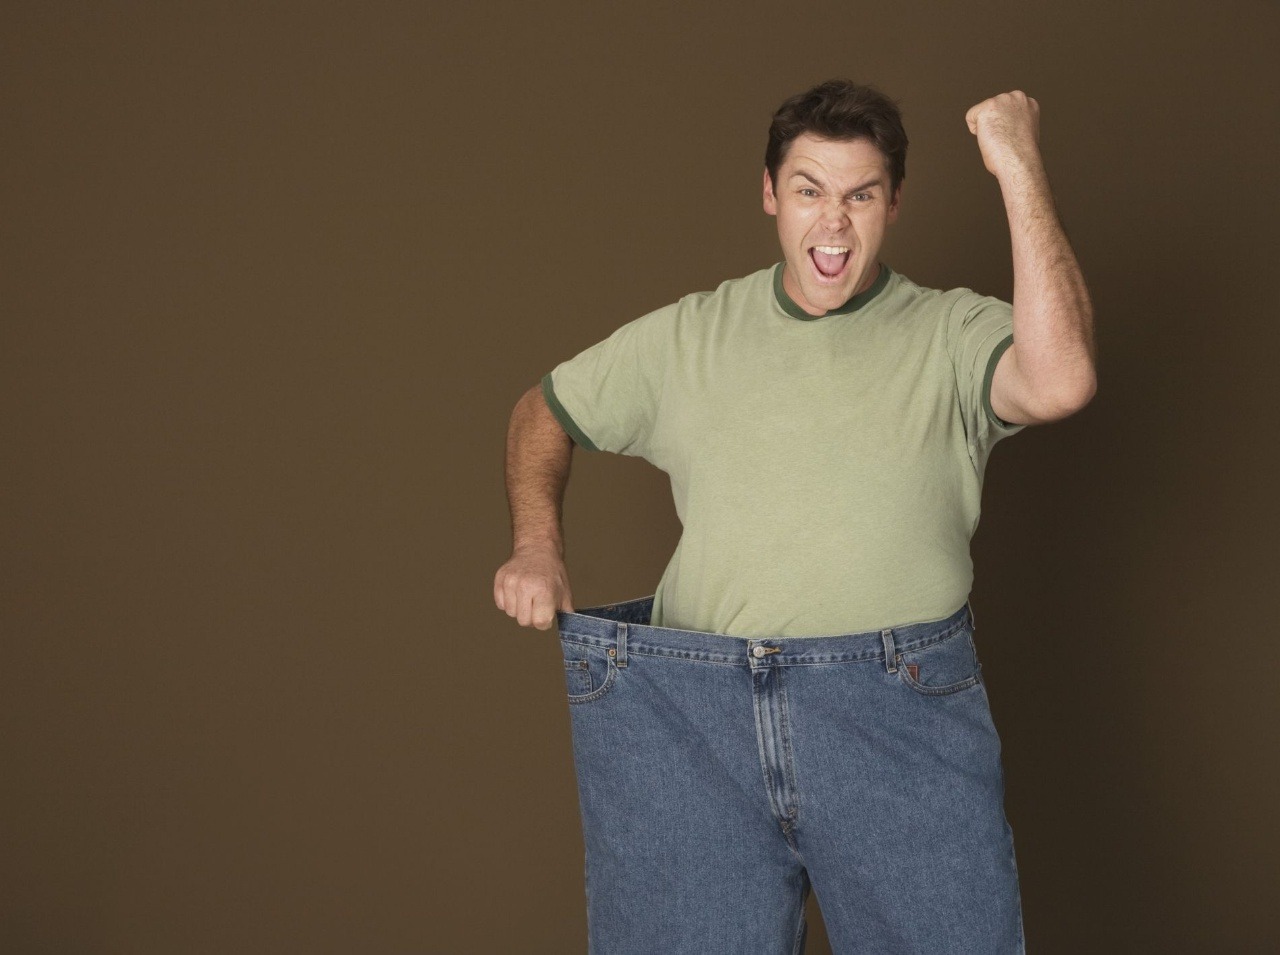 Keď zistíte, či máte spomalený metabolizmus, môžete sa pustiť do spaľovania tukov!